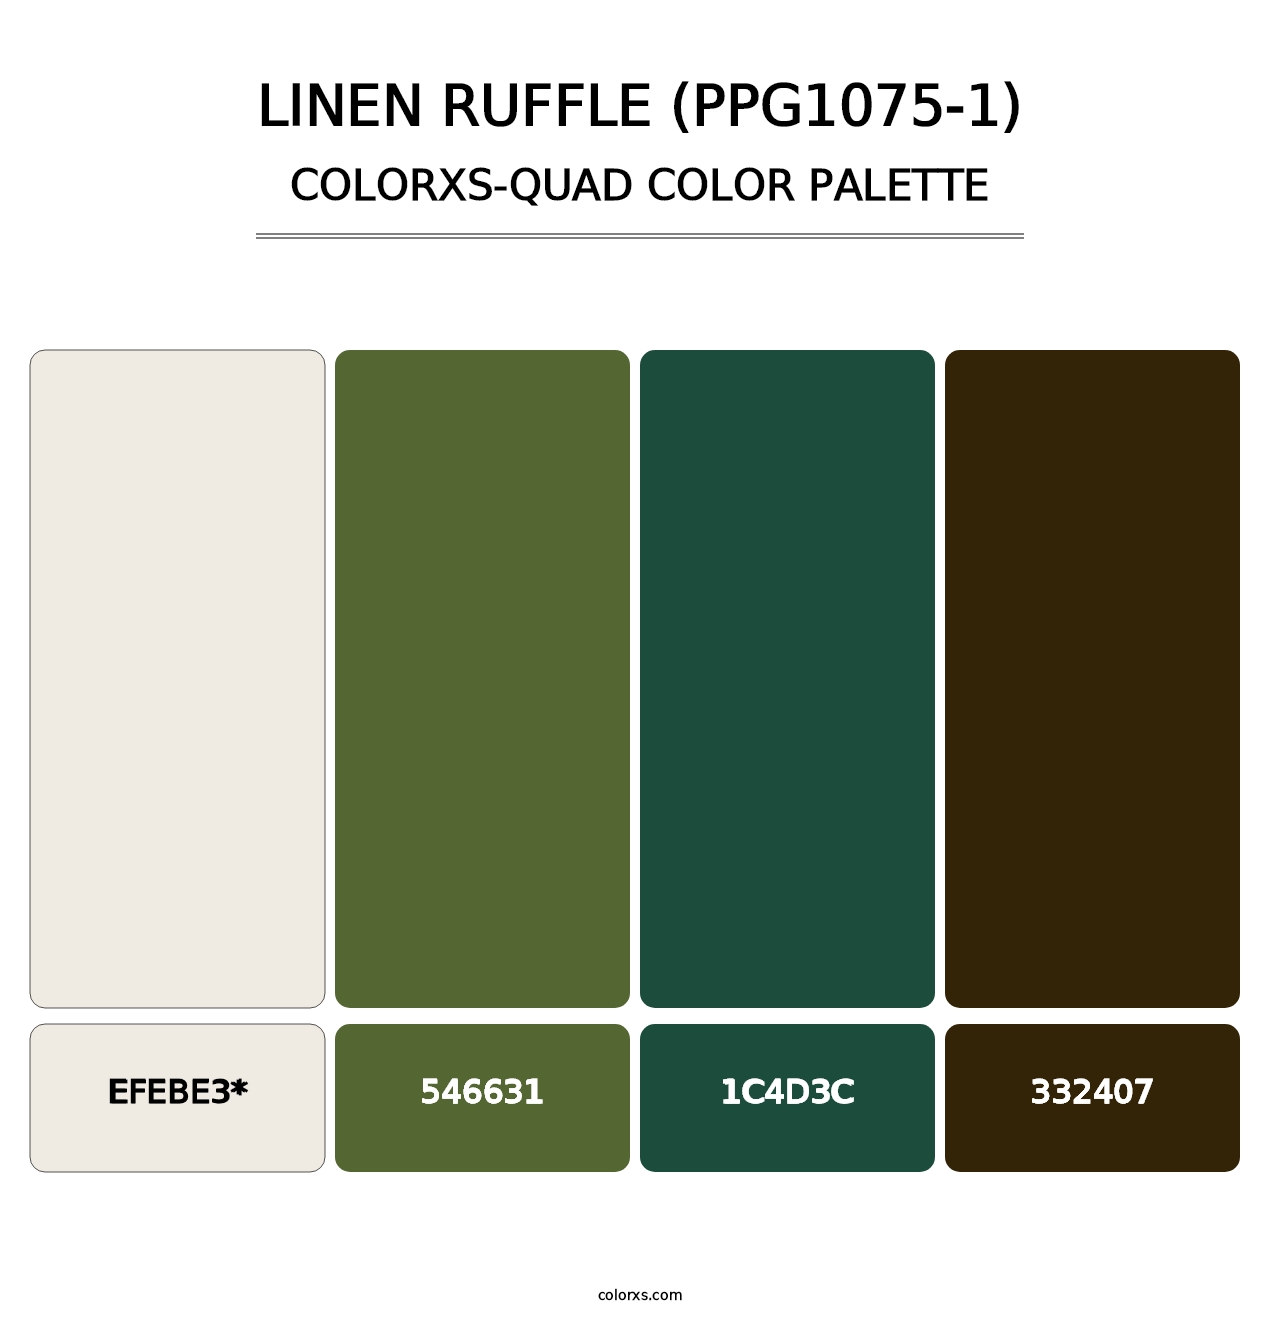 Linen Ruffle (PPG1075-1) - Colorxs Quad Palette